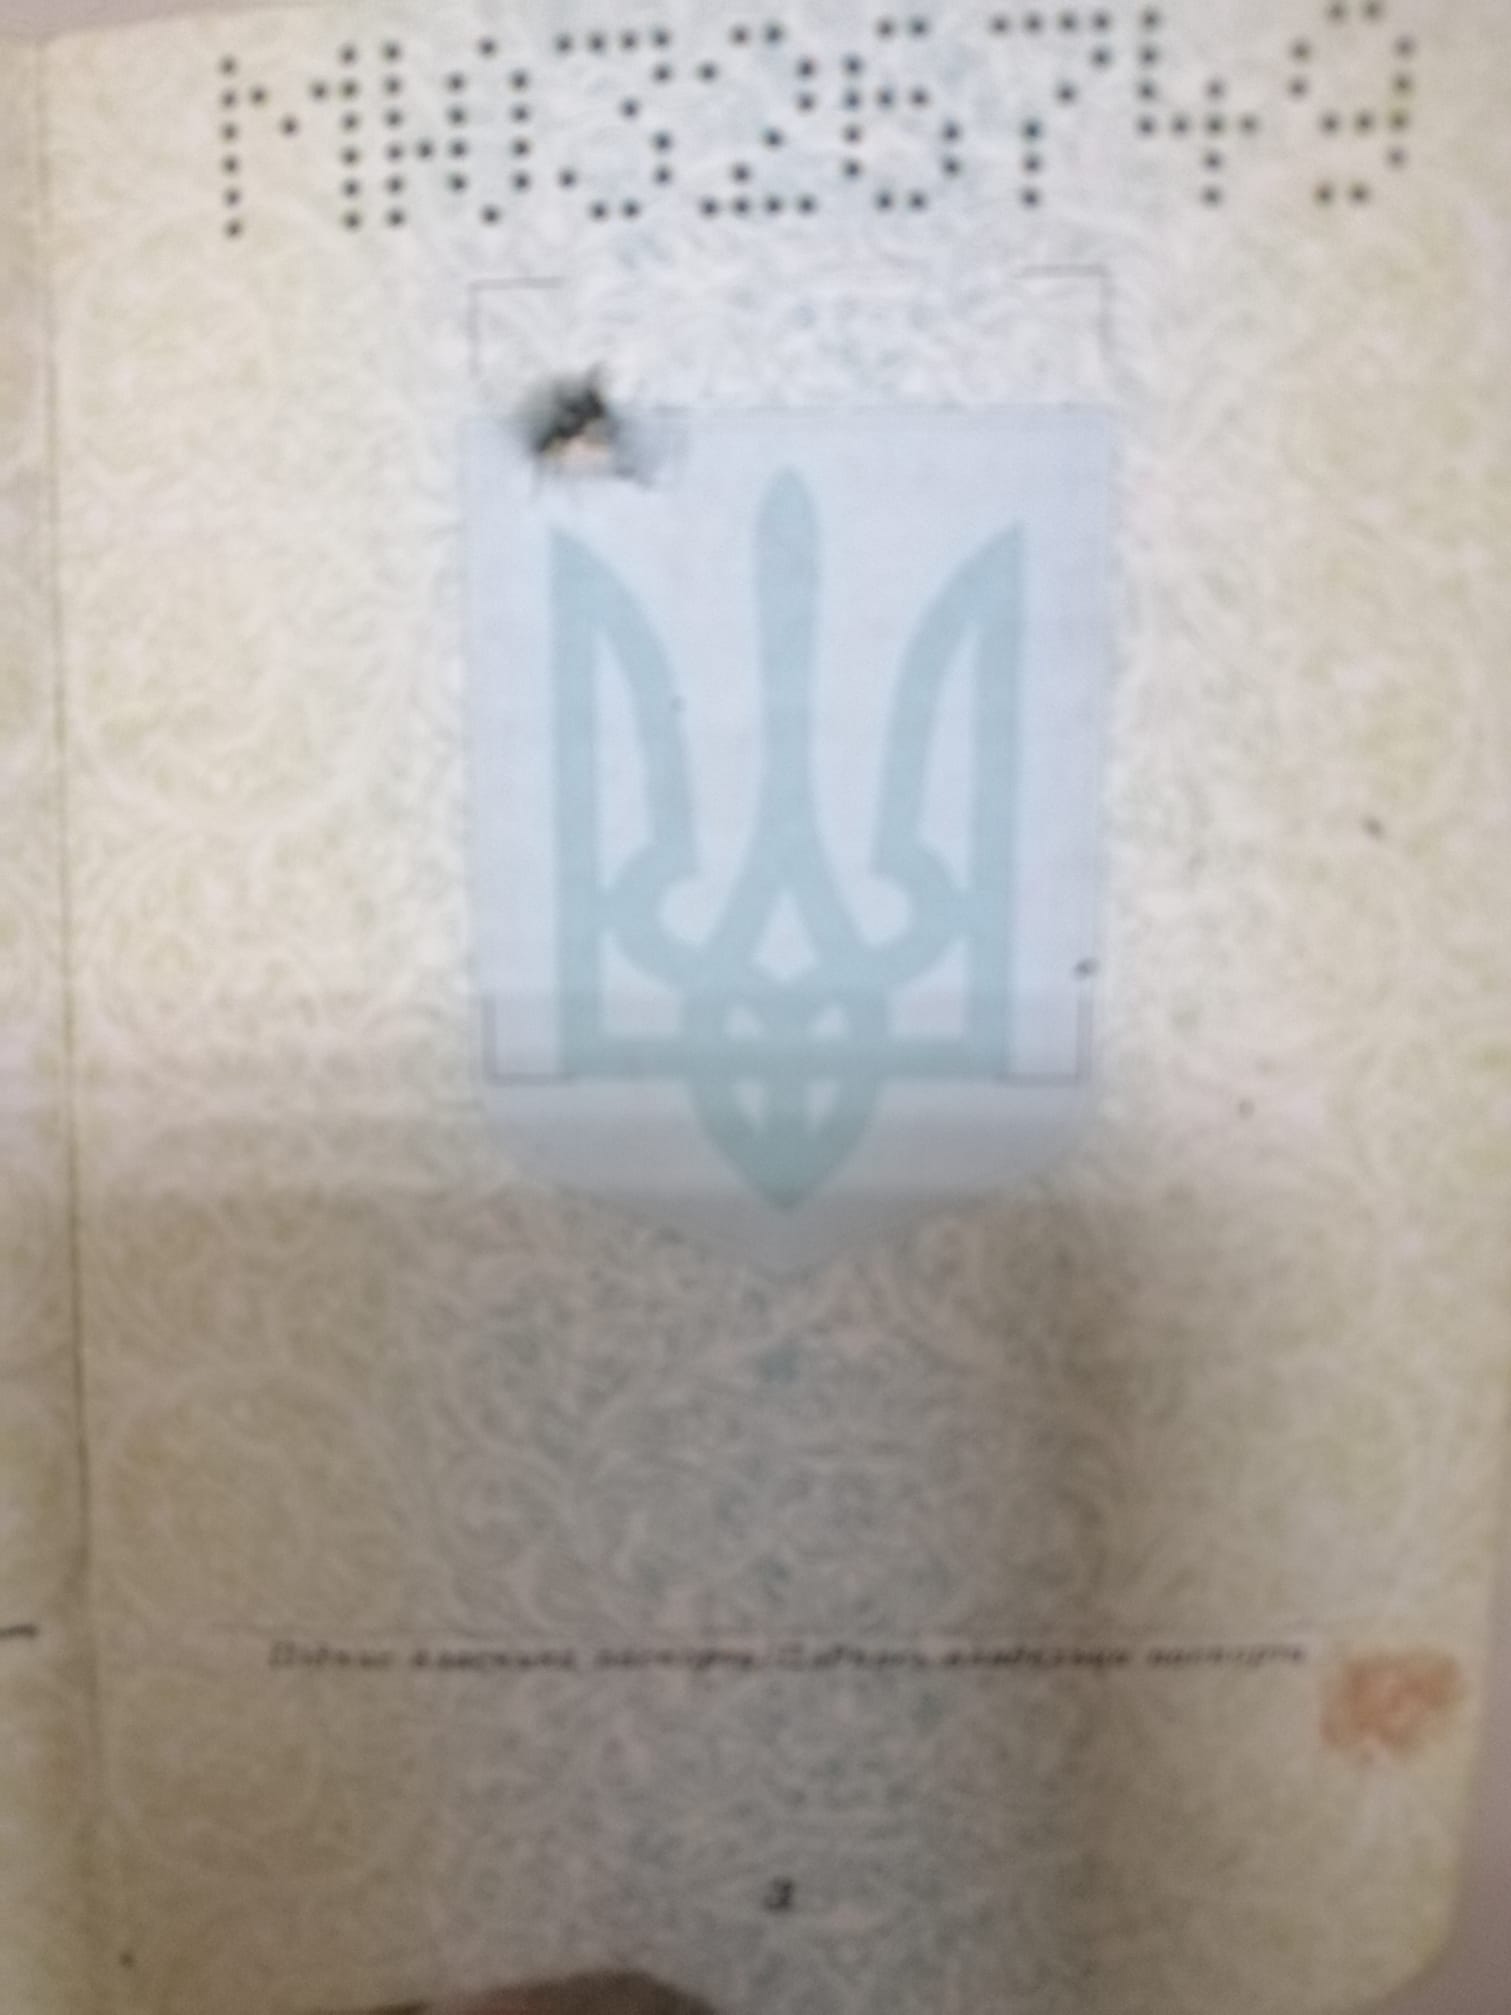 на фото фото з пробитим російською кулею паспортом громадянина України -  Ярослава Гранітного.